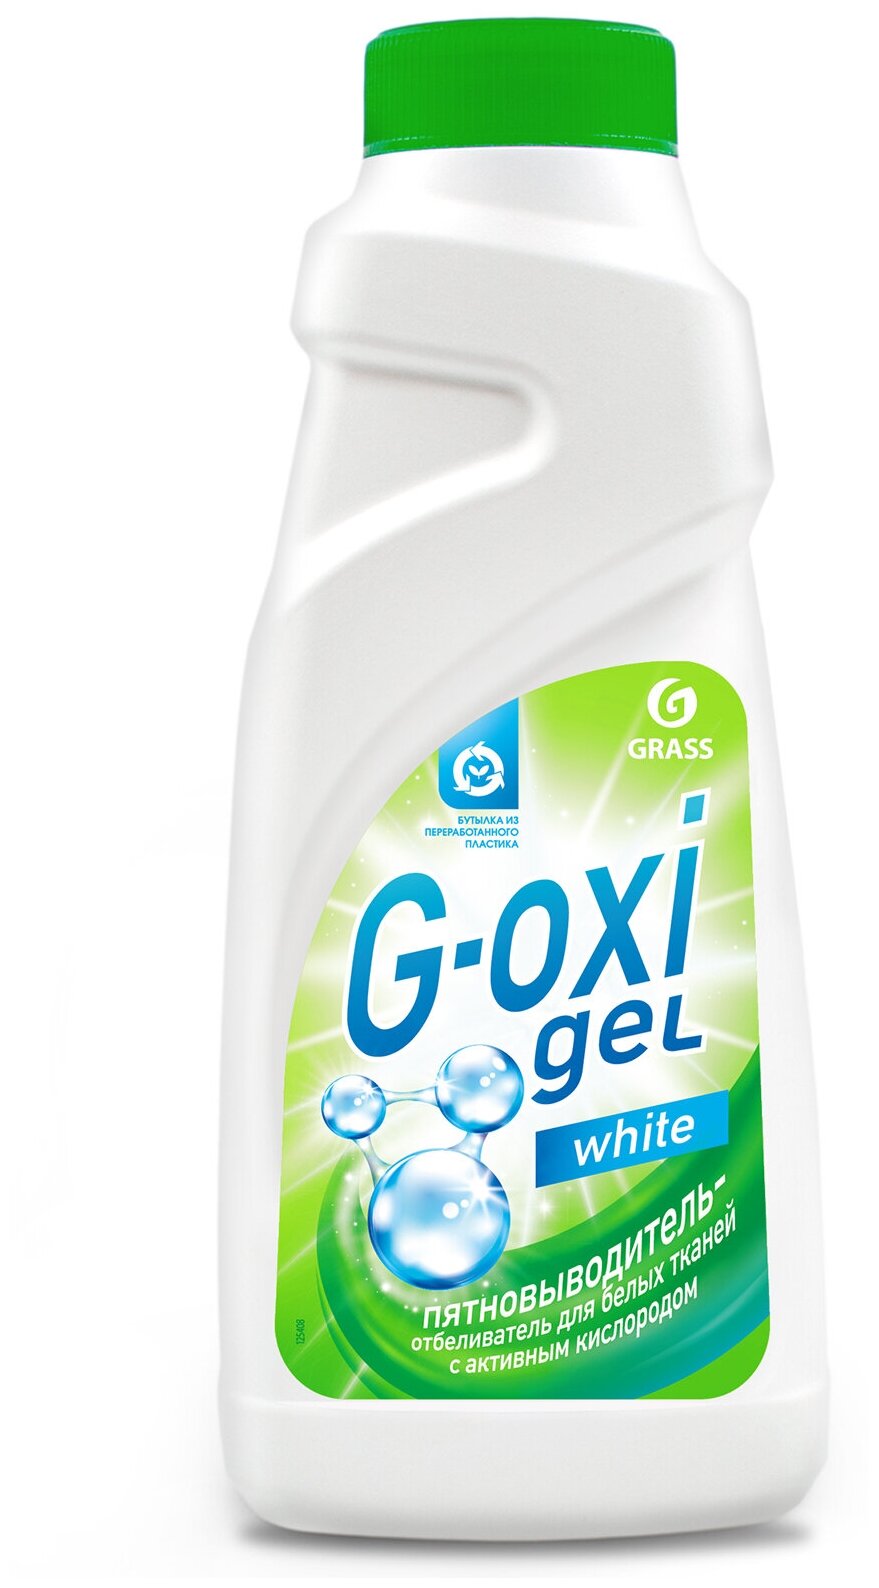 Grass Пятновыводитель-отбеливатель для белых тканей с активным кислородом G-OXI gel, 500мл.